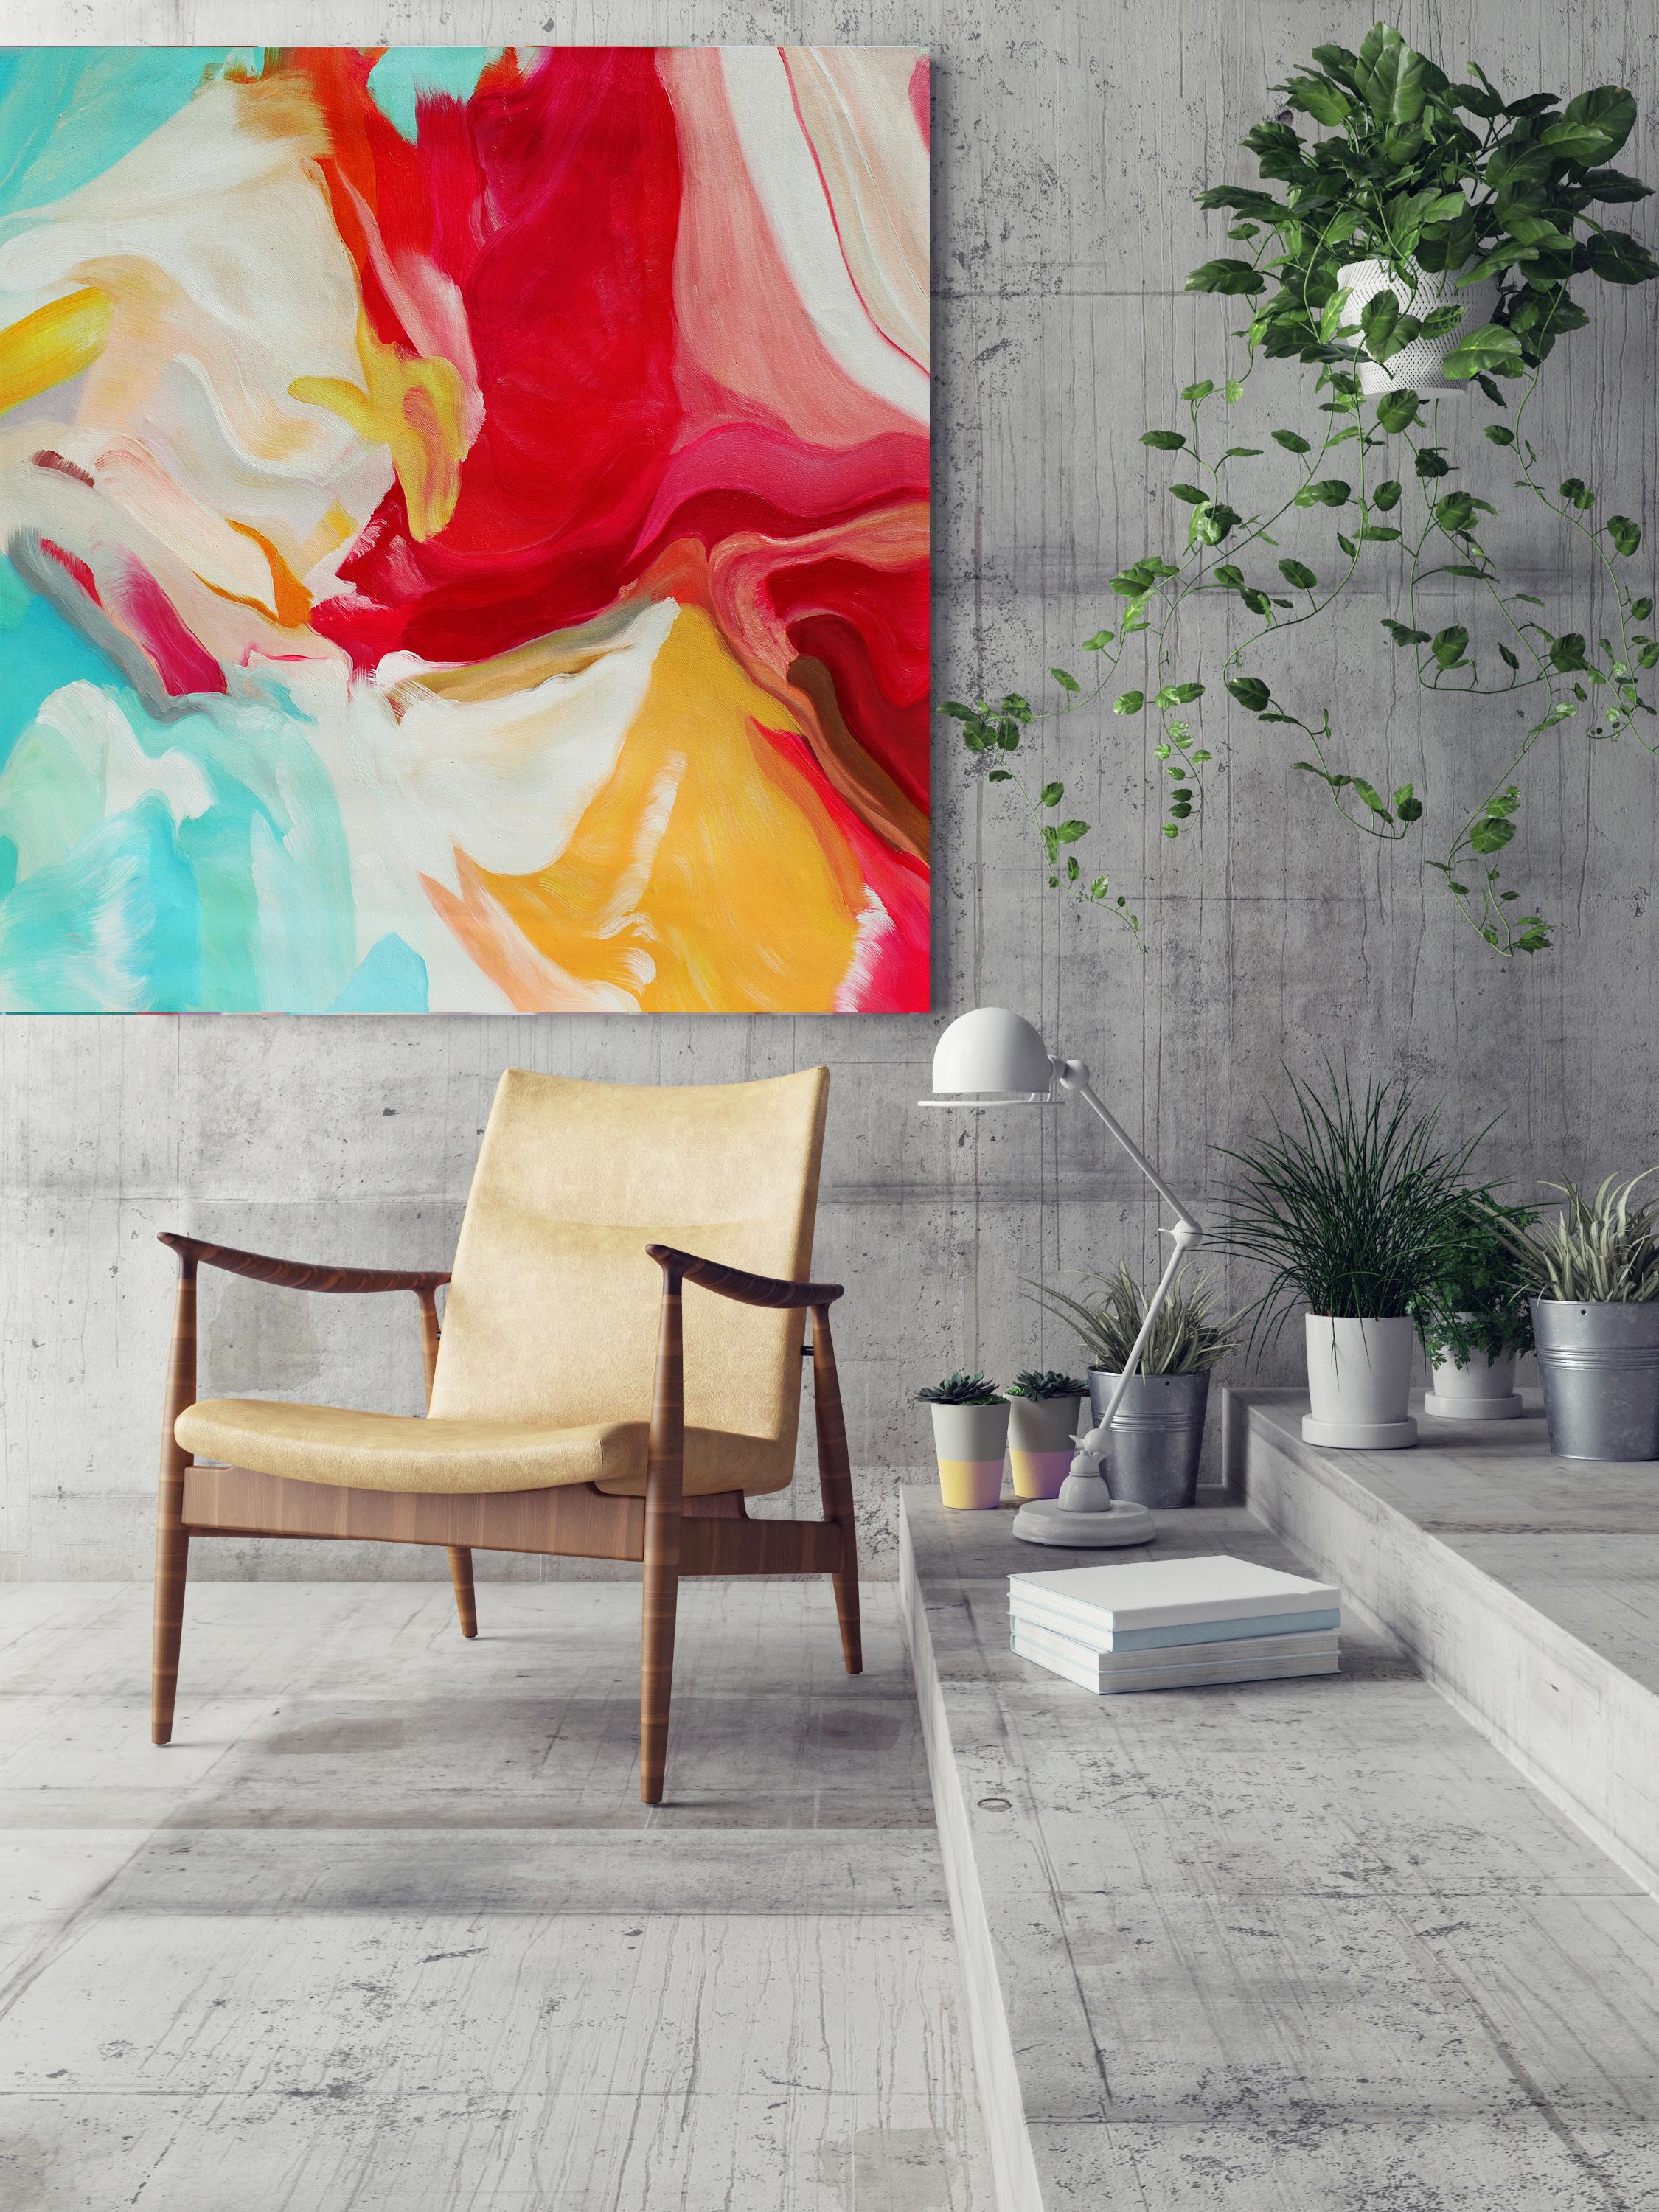 Abstract Painting Irena Orlov - Peinture à l'huile abstraite sur toile rouge, jaune et turquoise 36 x 36", Serenade